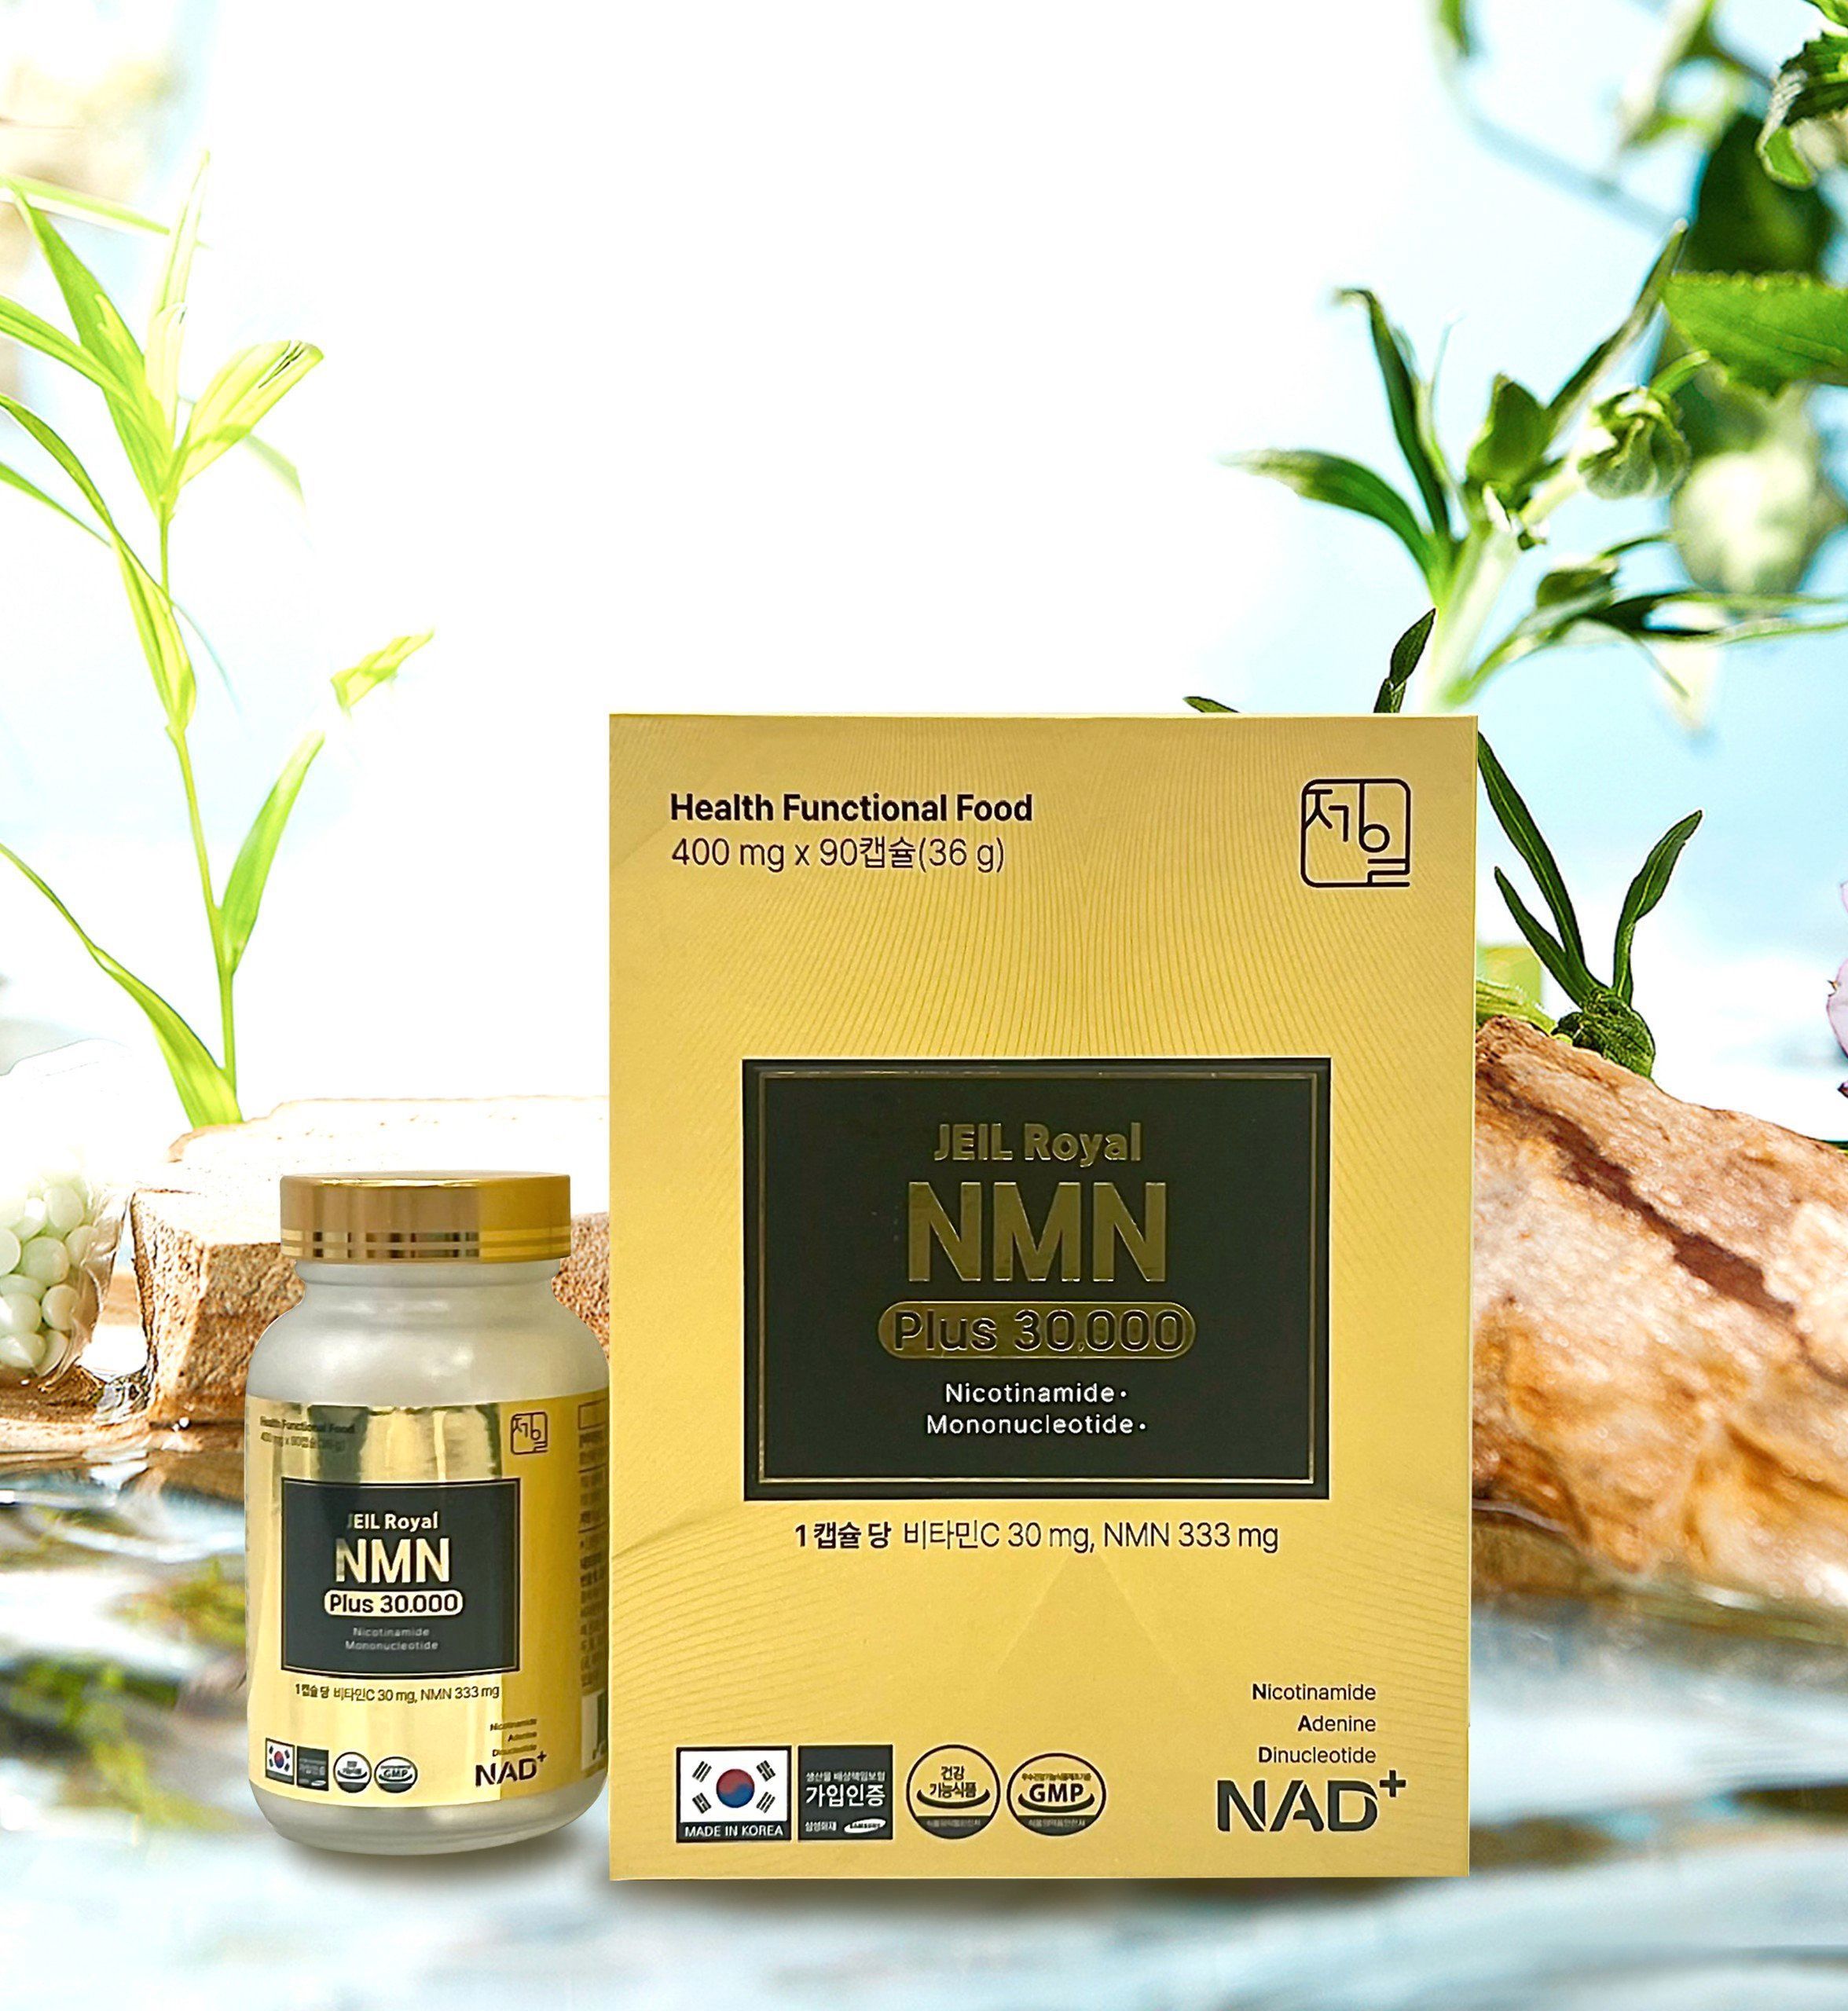 Hướng dẫn uống NMN để có hiệu quả tốt nhất